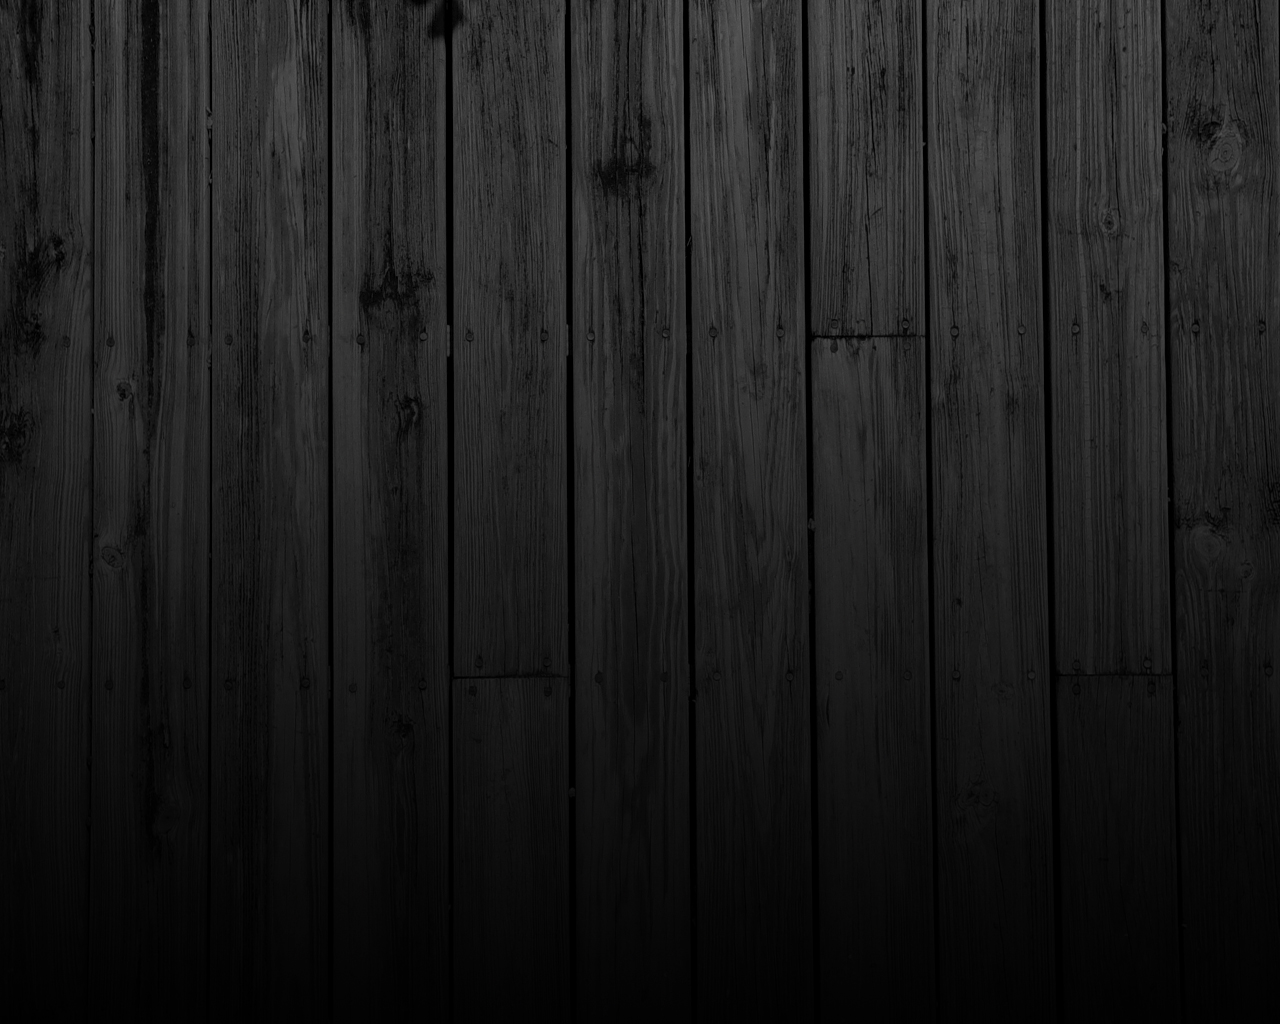 Hình nền Dark Wood Desktop Wallpaper sẽ làm cho máy tính của bạn trở nên đẳng cấp và sang trọng hơn. Với sự kết hợp giữa những vòng xuyến đầy sắc nét và đường nét tự nhiên của gỗ, hình ảnh này chắc chắn sẽ làm bạn hài lòng.